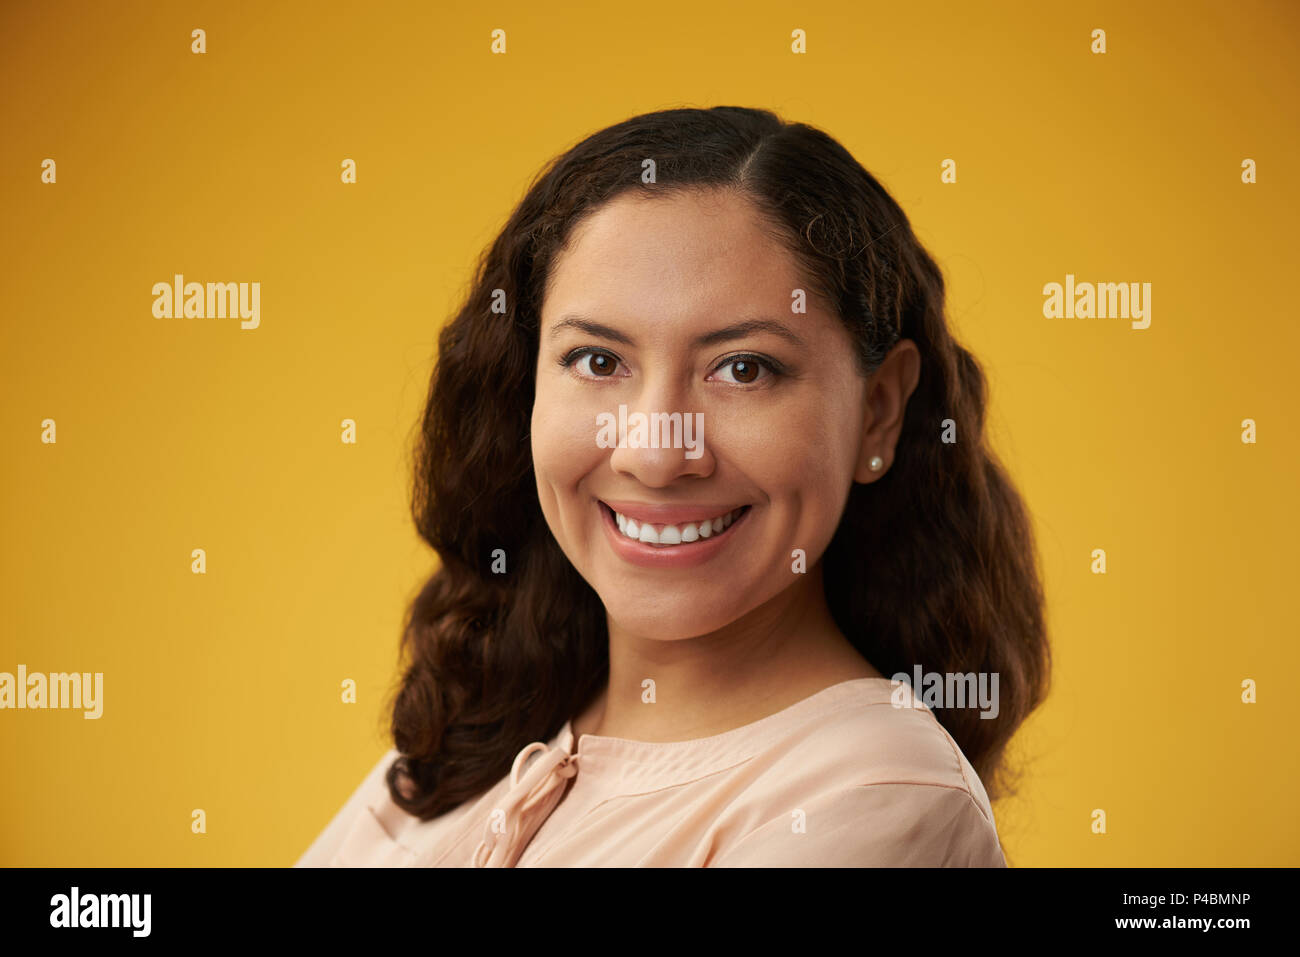 Cheerful smiling hispanic girl with dark hair on yellow background Stock Photo